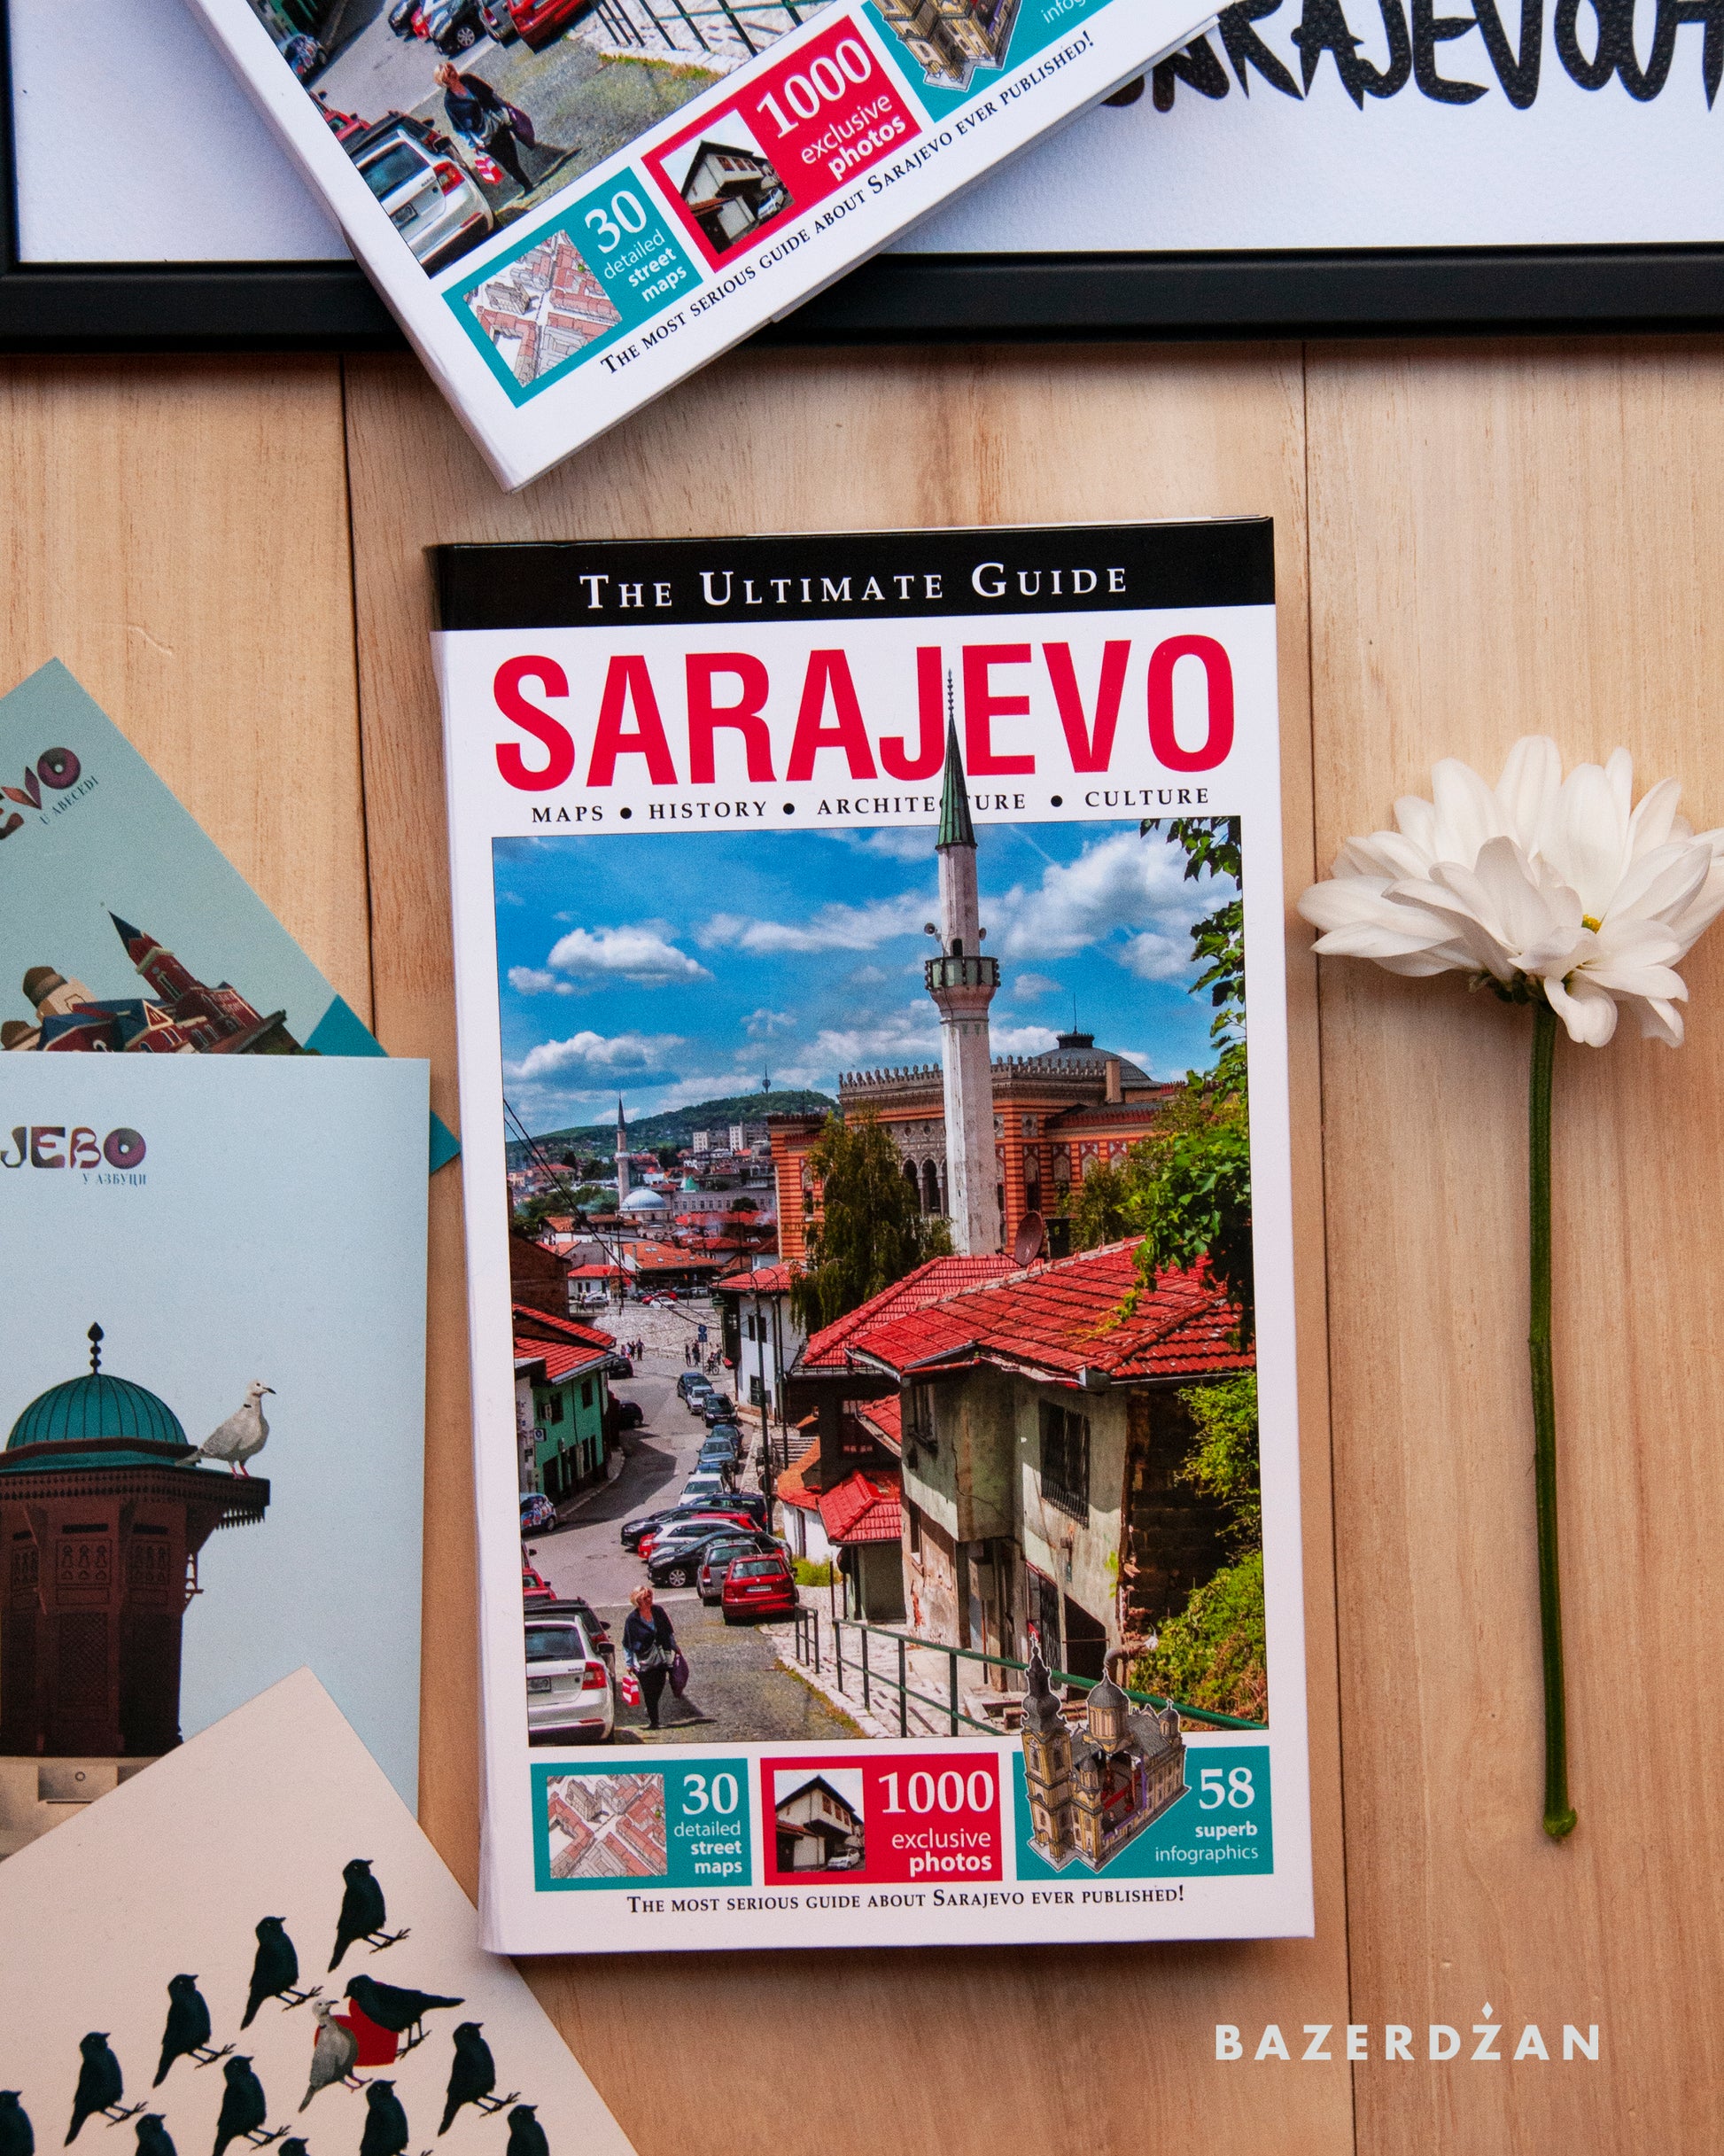 Sarajevo - The Ultimate Guide by Emir Isović - Bazerdzan